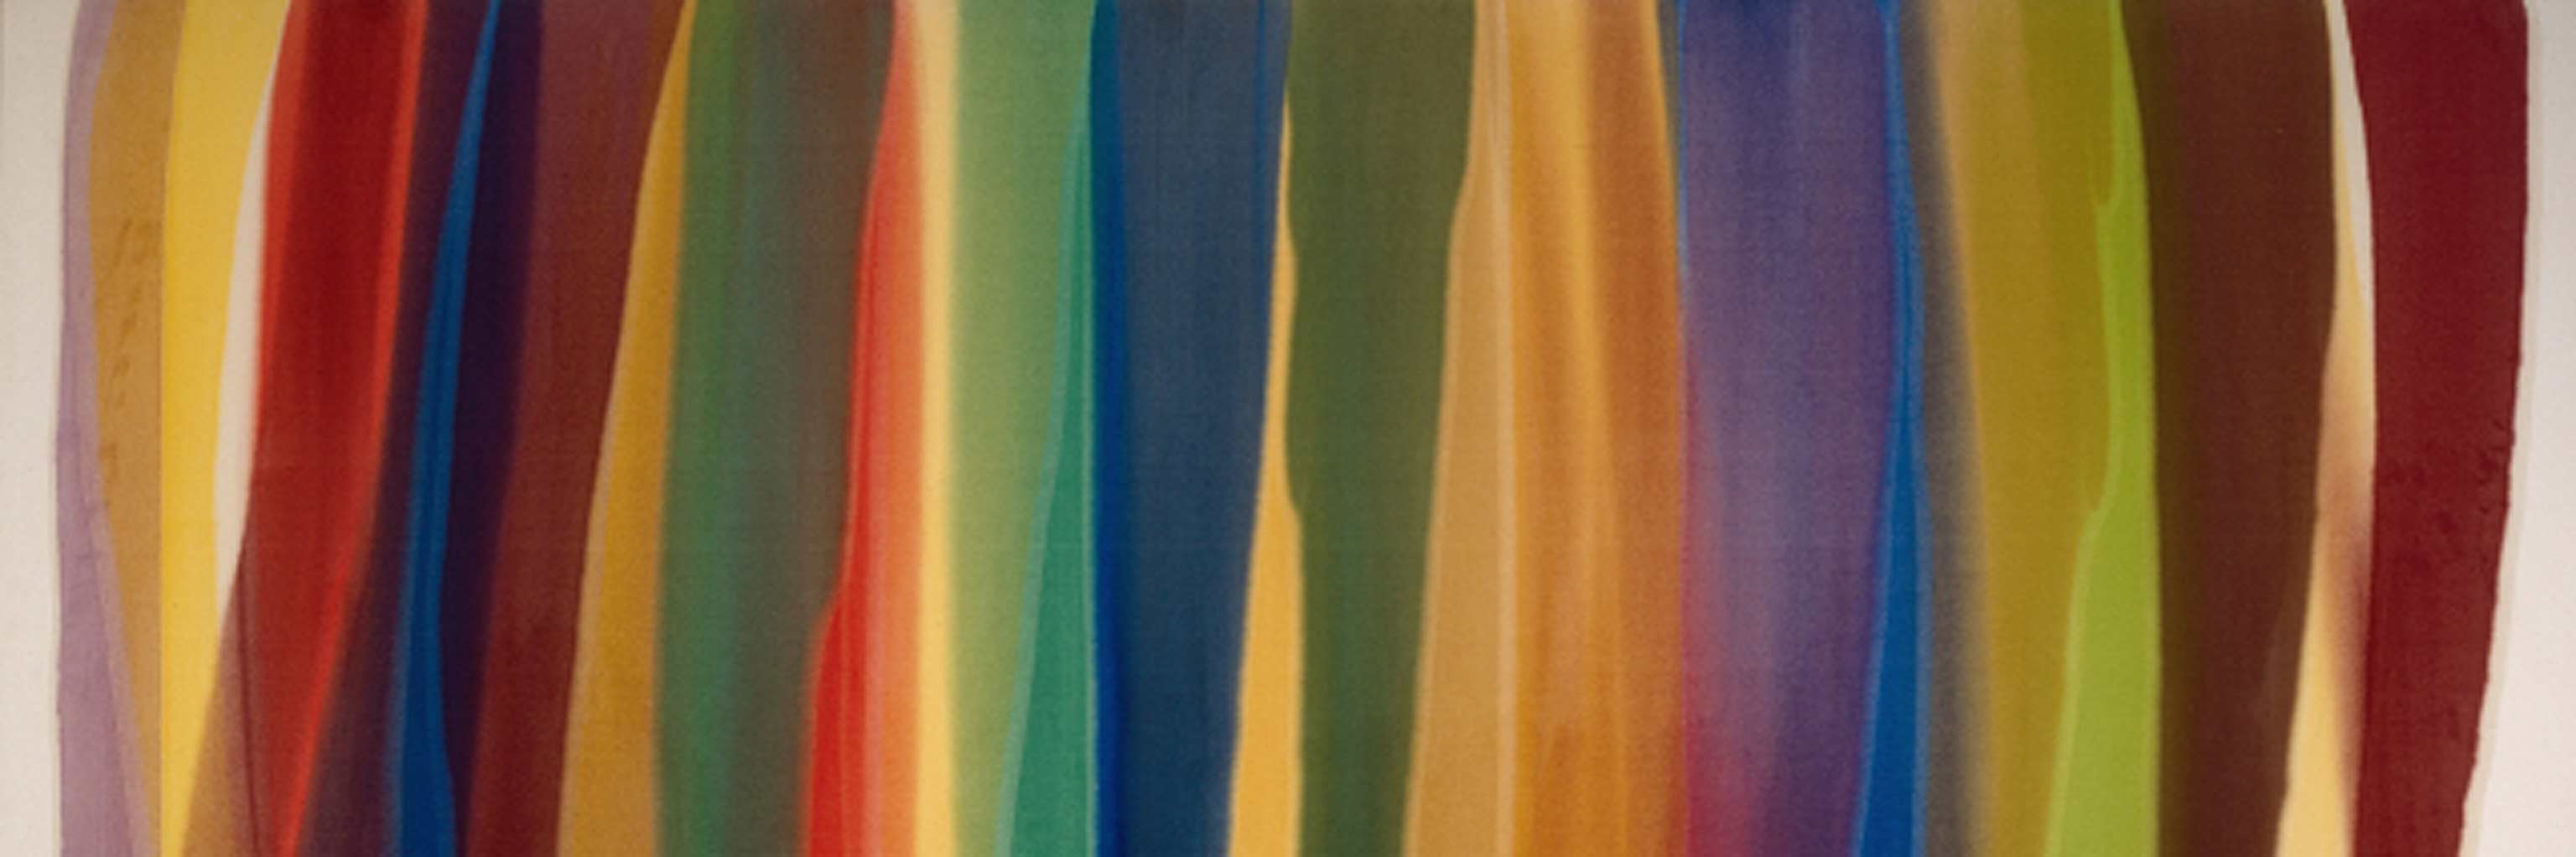 Vertical streaks of various colors 